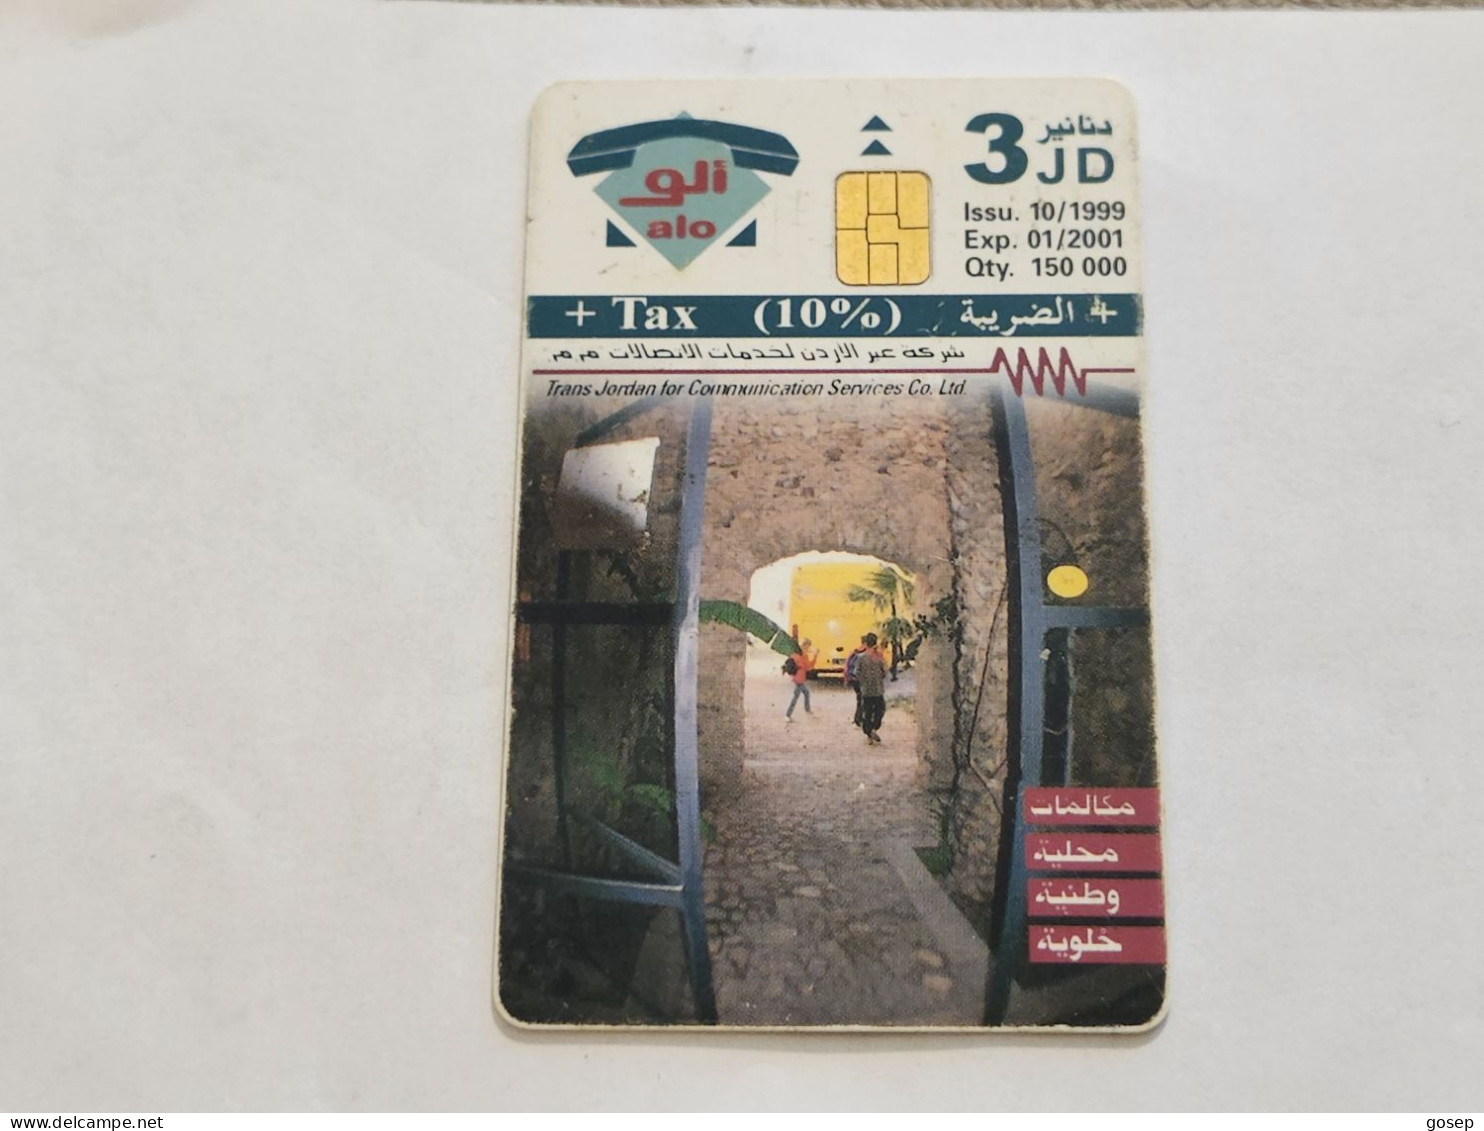 JORDAN-(JO-ALO-0067)-Tabqat Fahel "Pella-(187)-(1101-620111)-(3JD)-(01/2001)-used Card+1card Prepiad Free - Jordanië